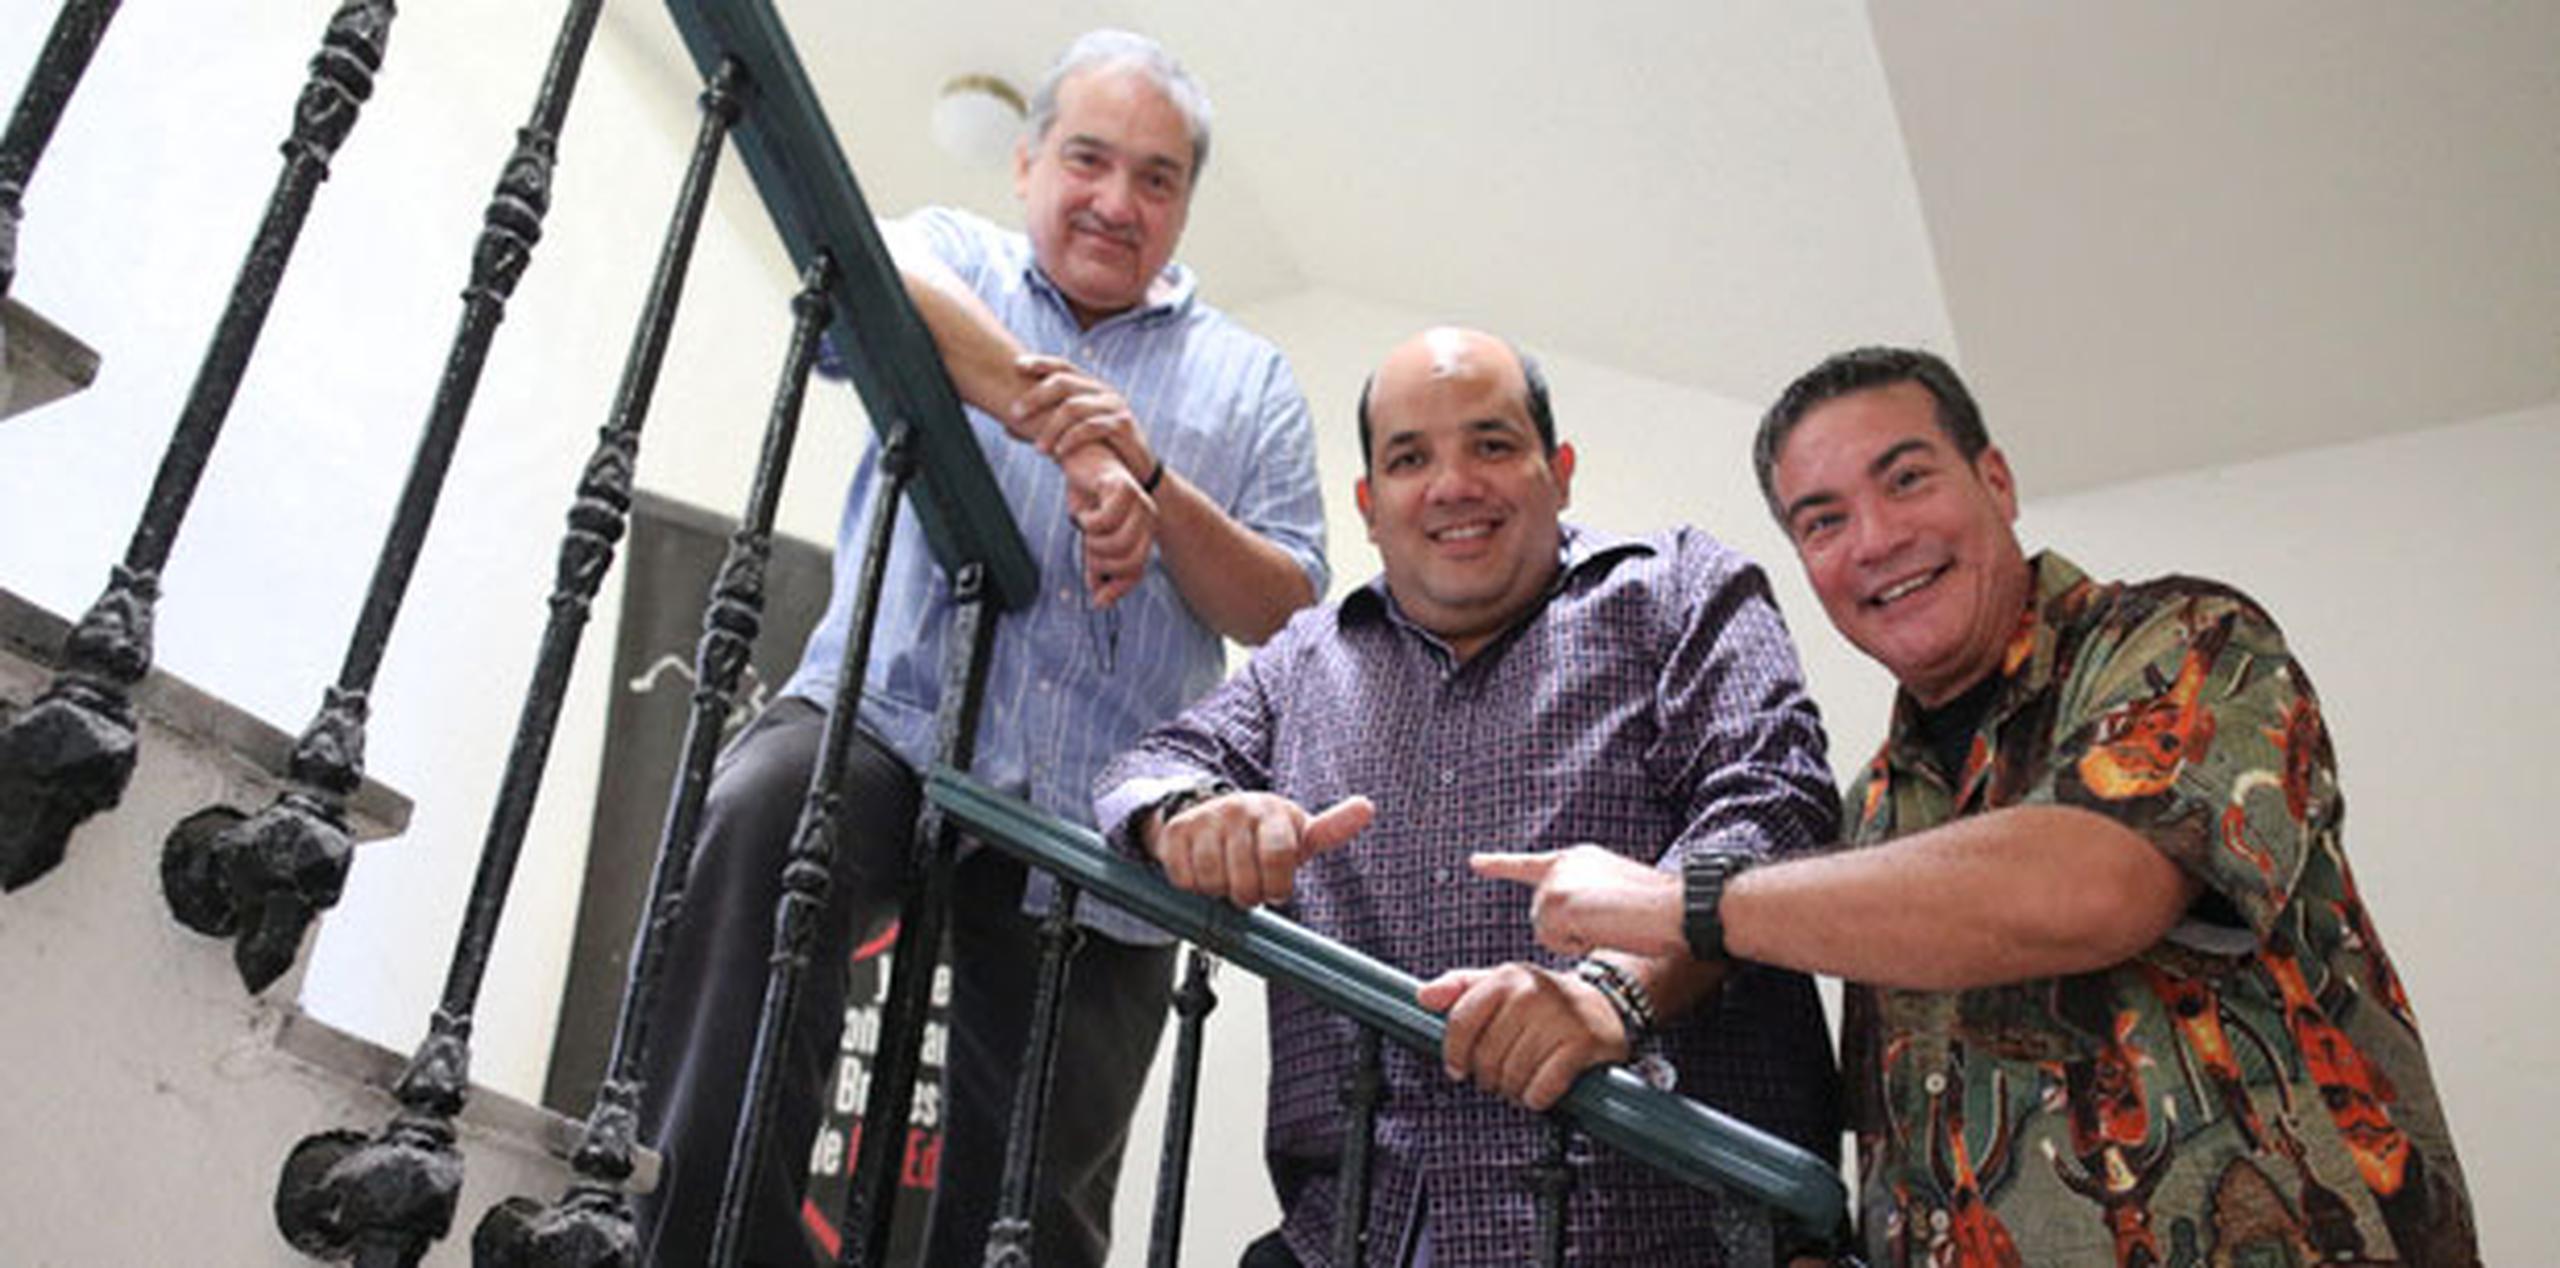 De izquierda a derecha, Javier Santiago, Richie Viera y Jaime Torres (david.villafane@gfrmedia.com)
